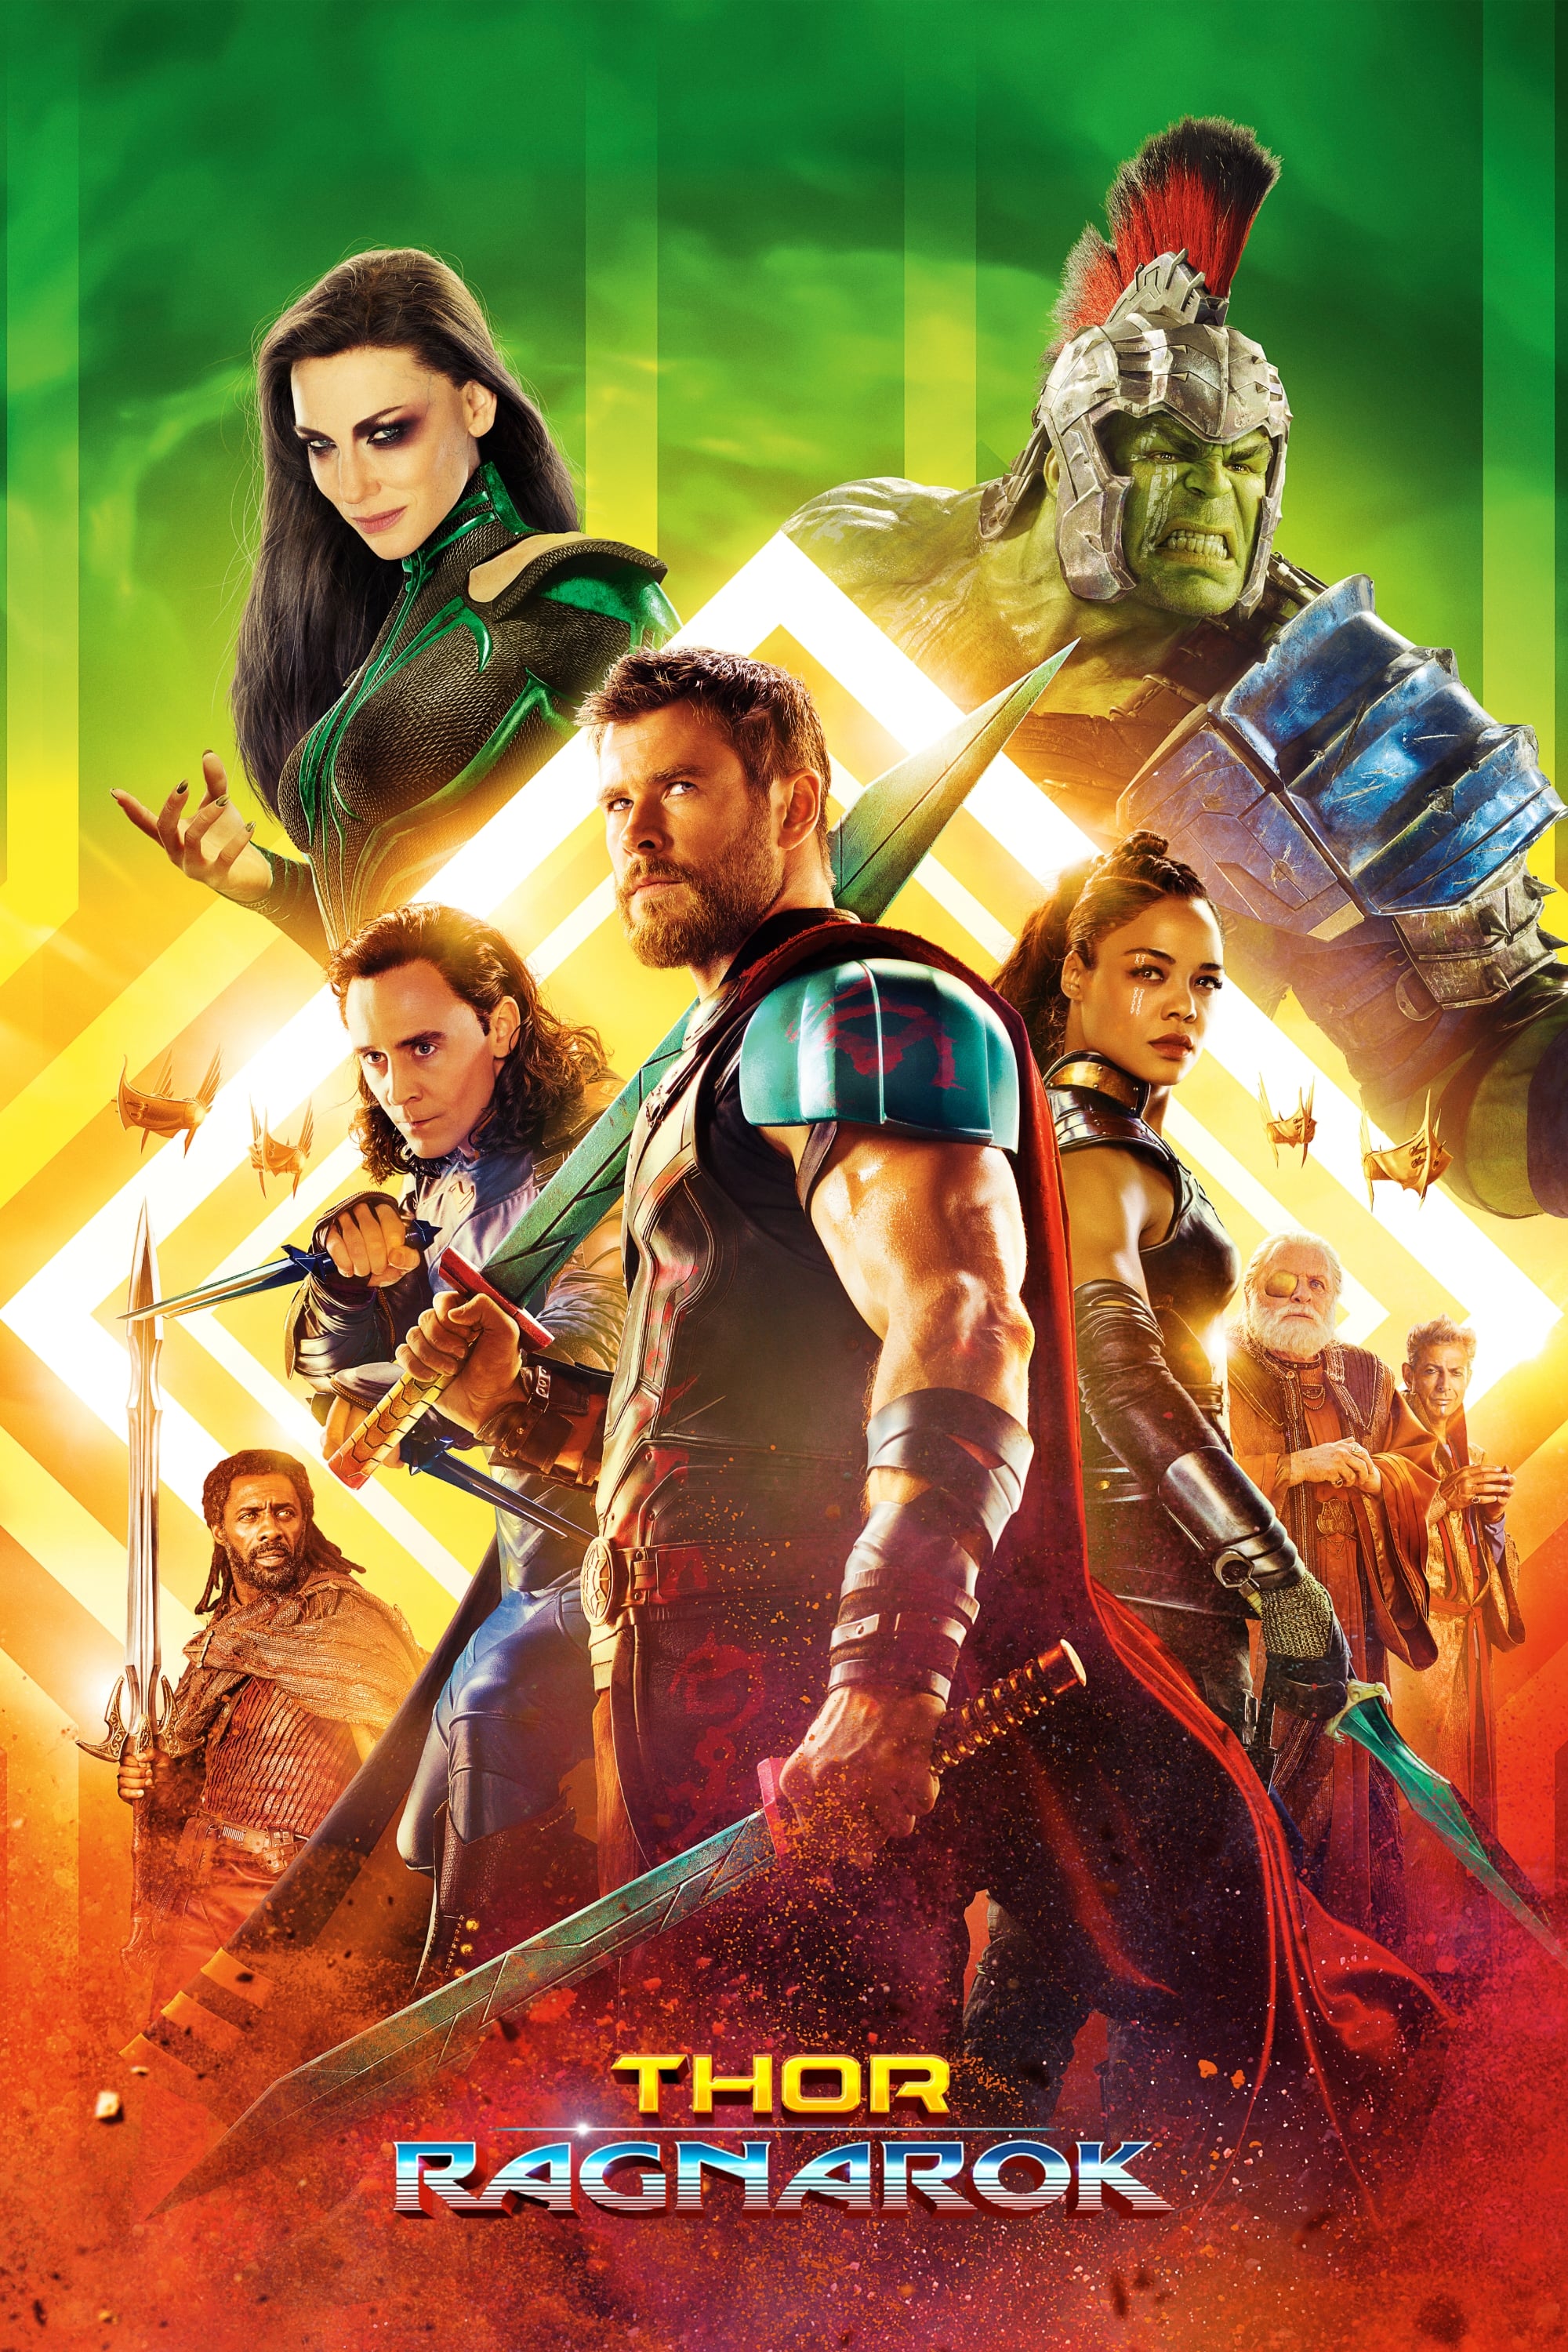 Thor: Ragnarok (English) Hindi Movie Download Torrent Free